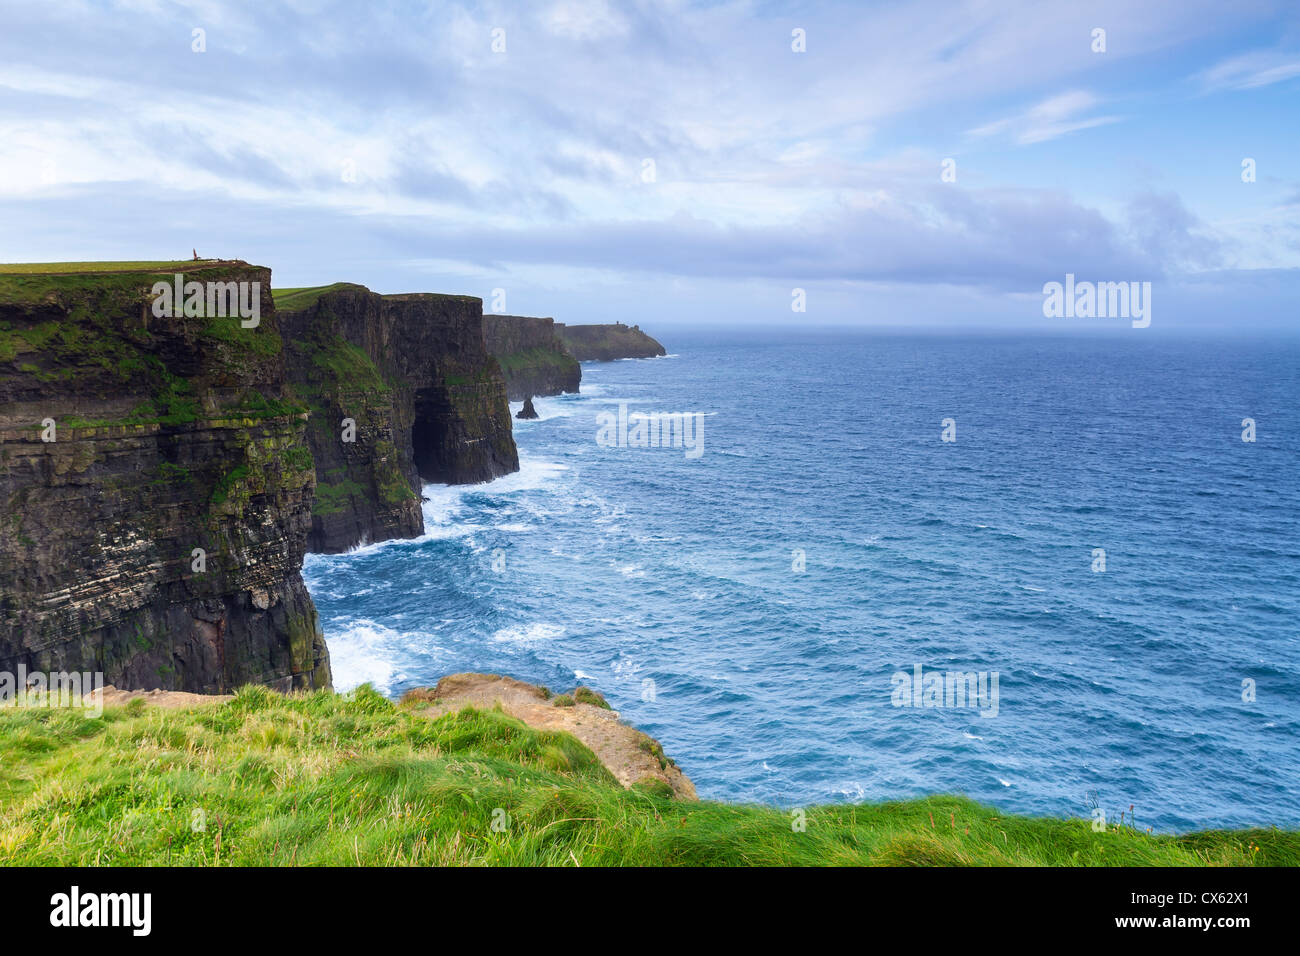 Die Cliffs of Moher befinden sich am südwestlichen Rand der Region Burren im County Clare, Irland. Steigen sie 120 Meter abo Stockfoto